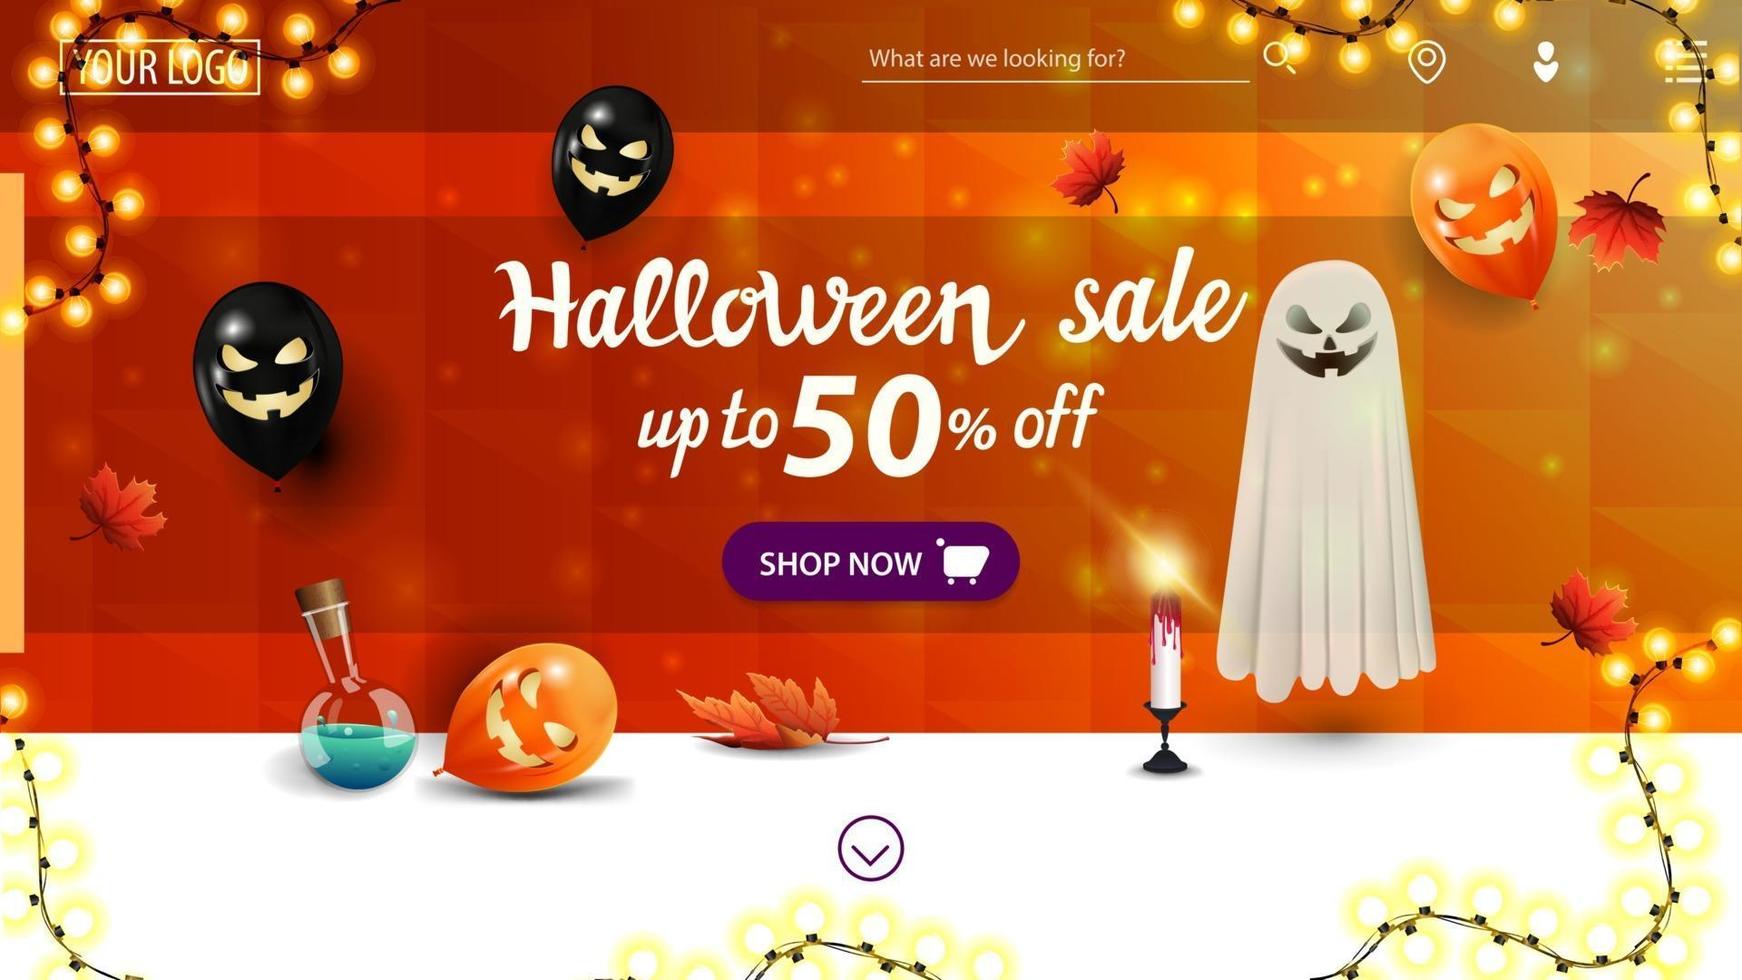 promoção de halloween, até 50 de desconto, banner de desconto horizontal para o site da página inicial com textura poligonal laranja, balões de halloween, guirlanda, folhas de outono, fantasma e veneno em frasco vetor